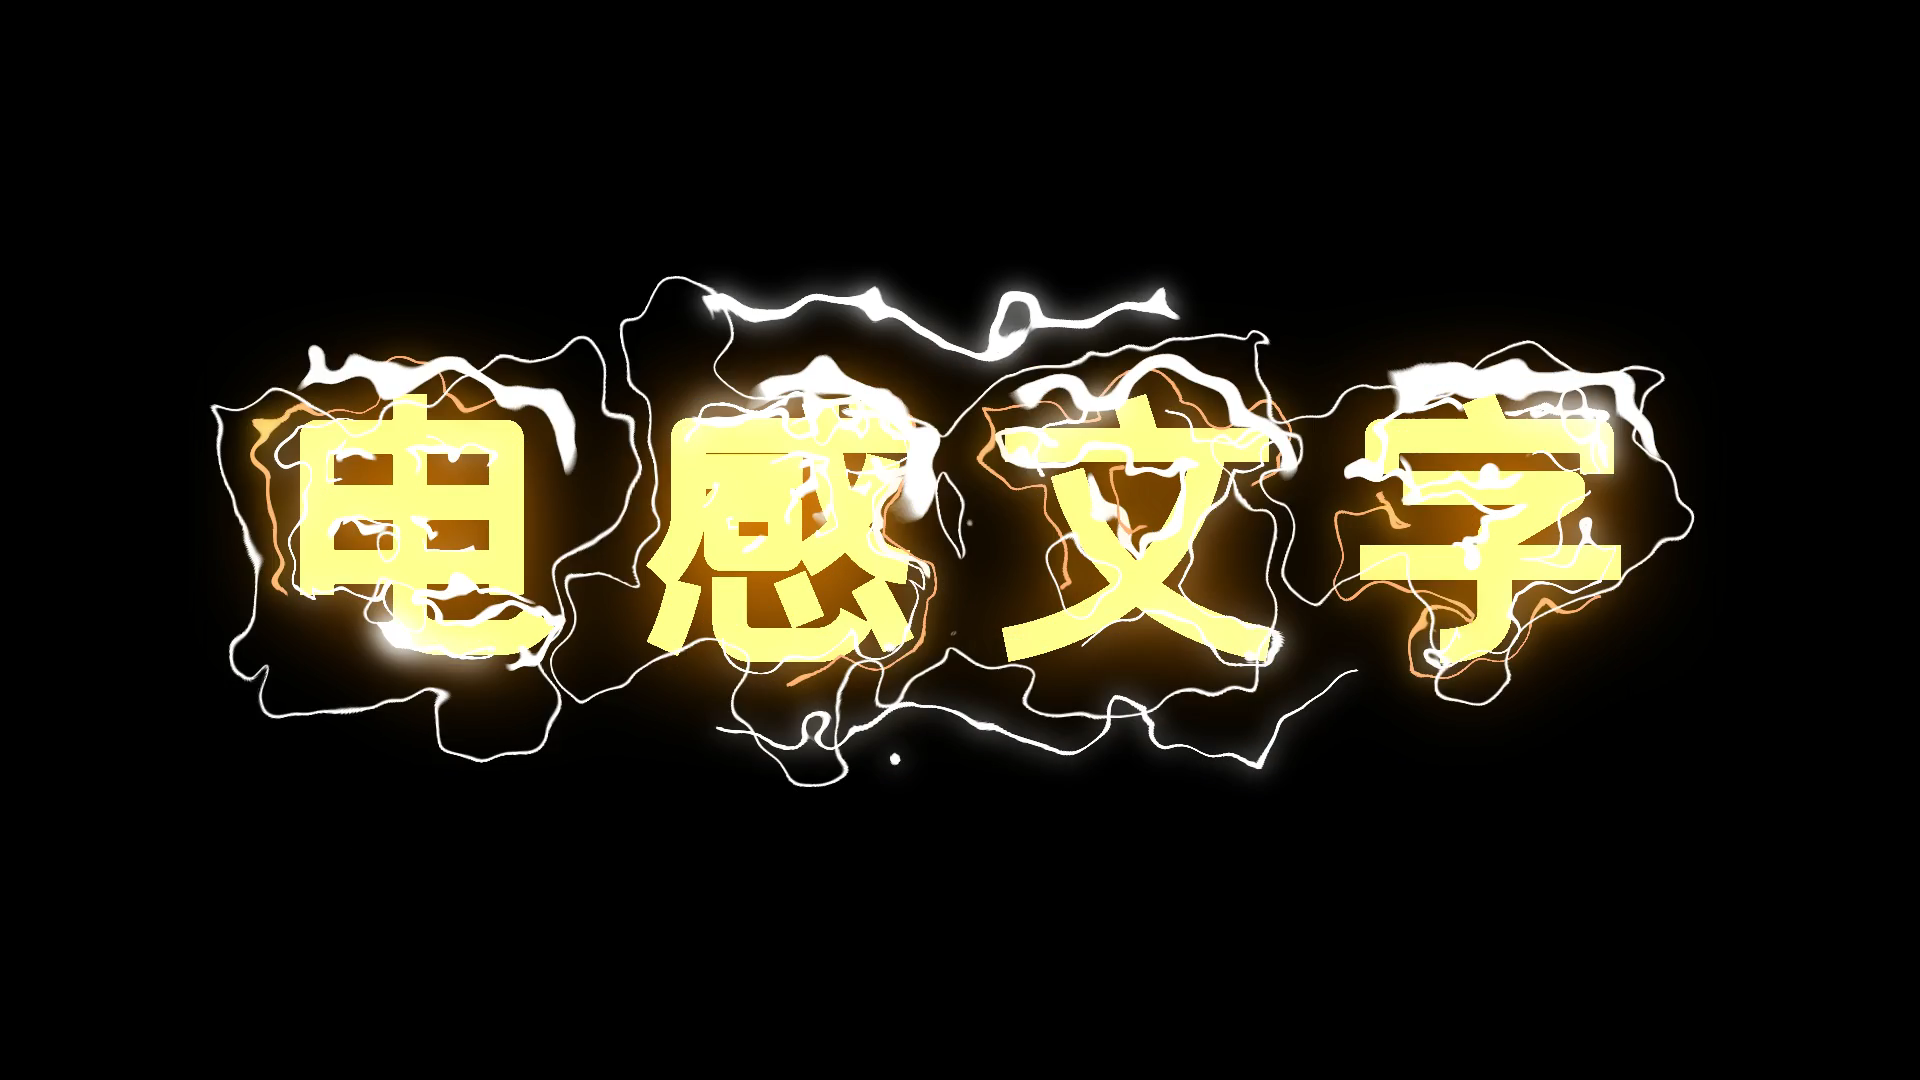 鱼眼七彩自闪LED模组灯-橱窗产品-深圳市鼎明光电科技有限公司